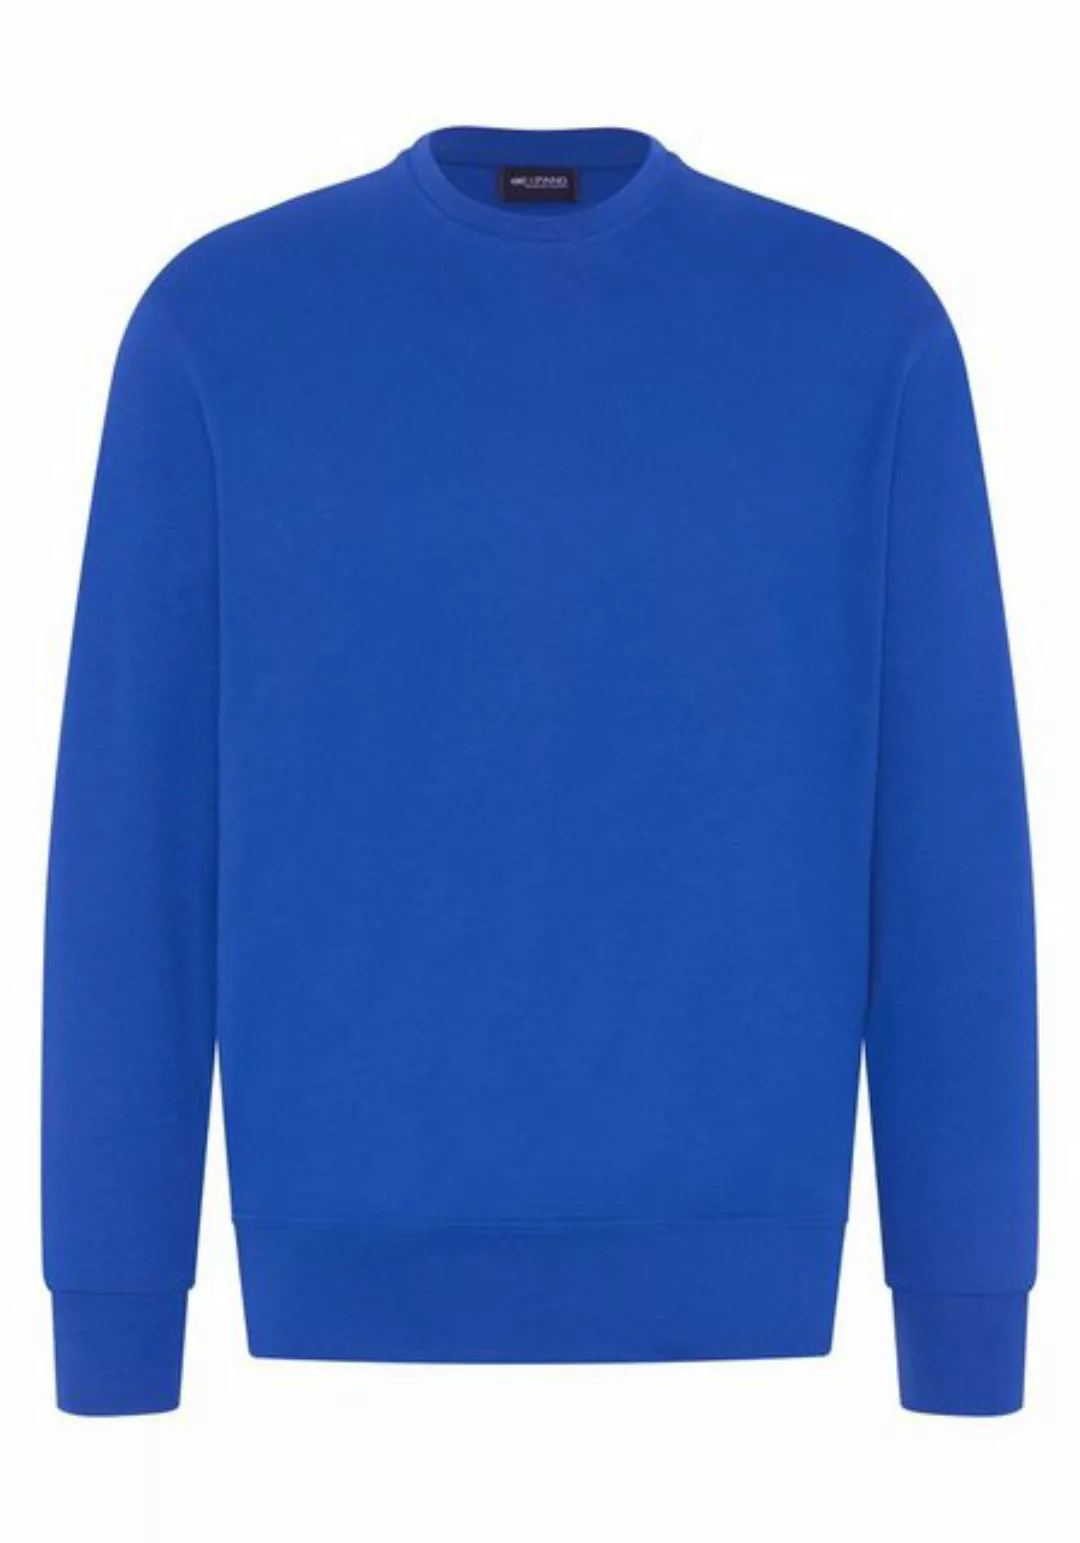 Expand Sweatshirt mit besonders hohem Tragekomfort, Übergröße günstig online kaufen